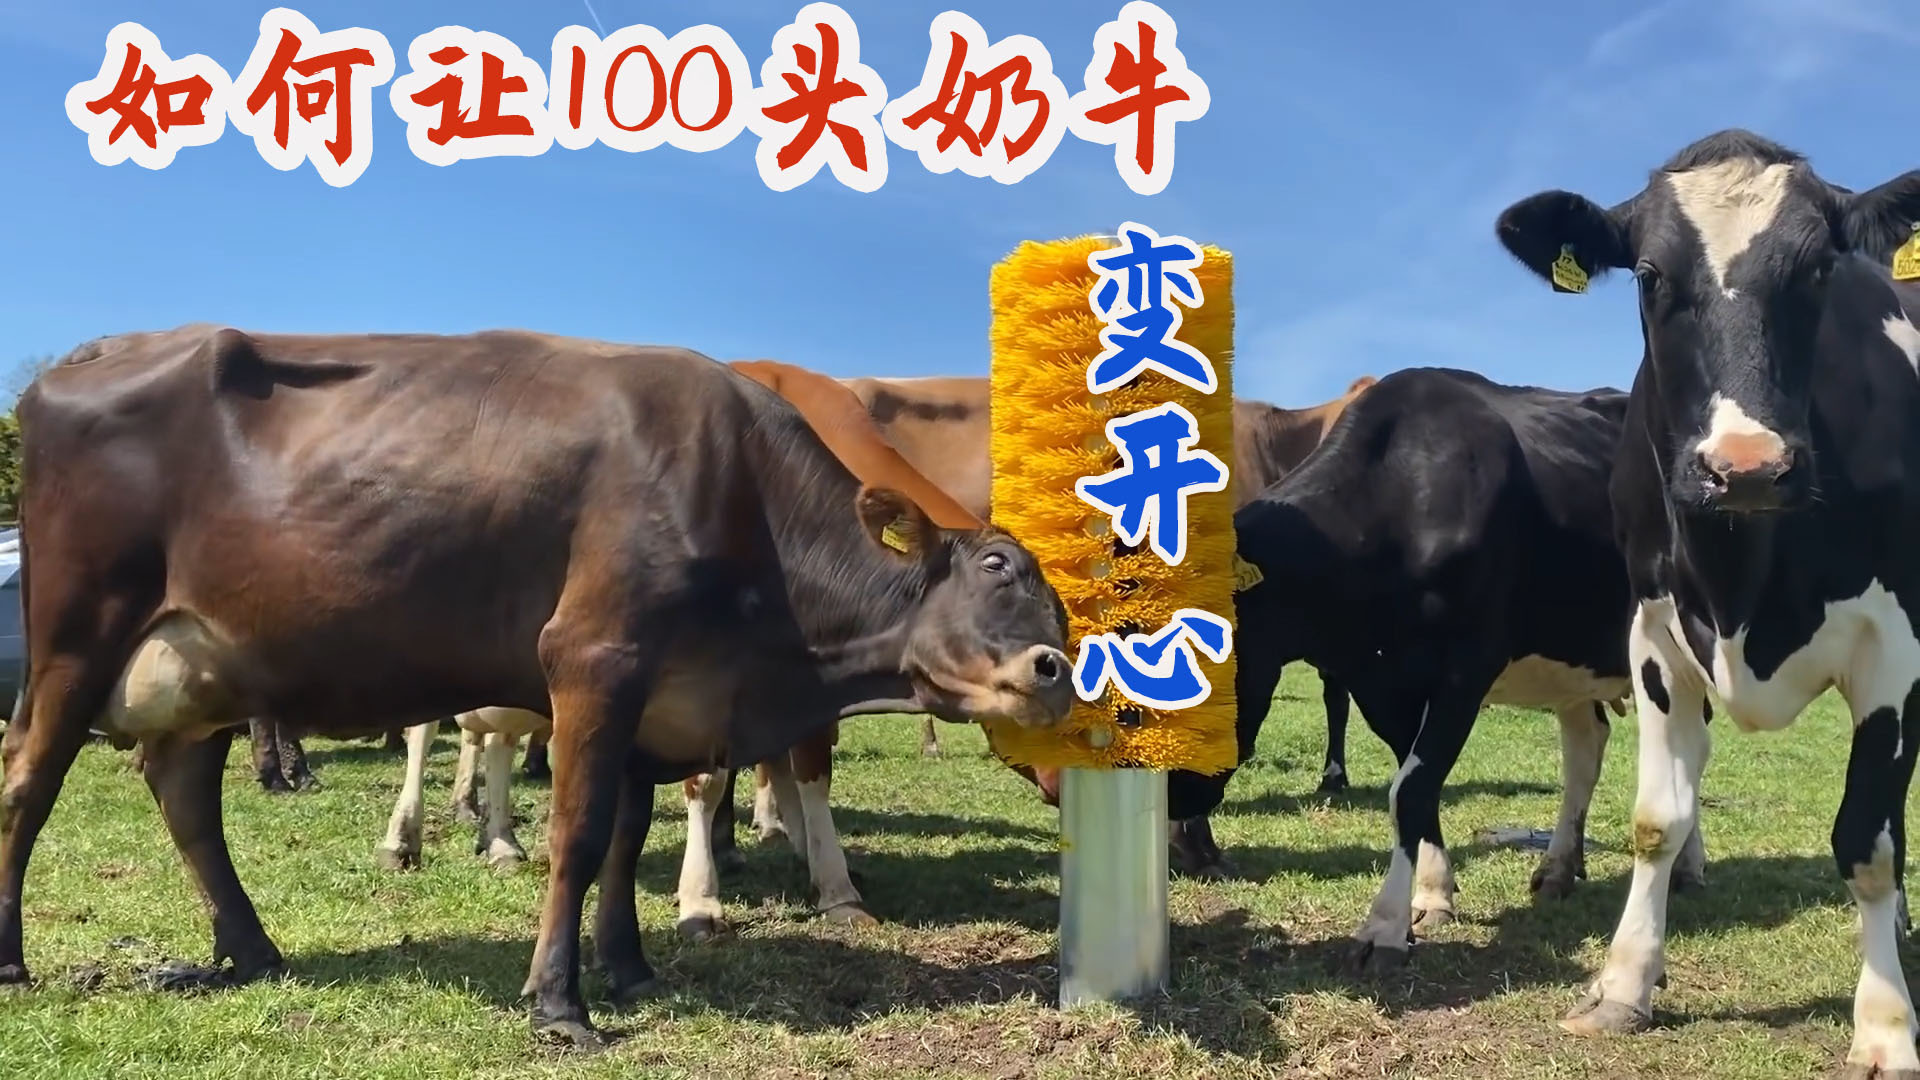 如何让牧场100只母奶牛变开心？英国奶农发明了一套福利工具！